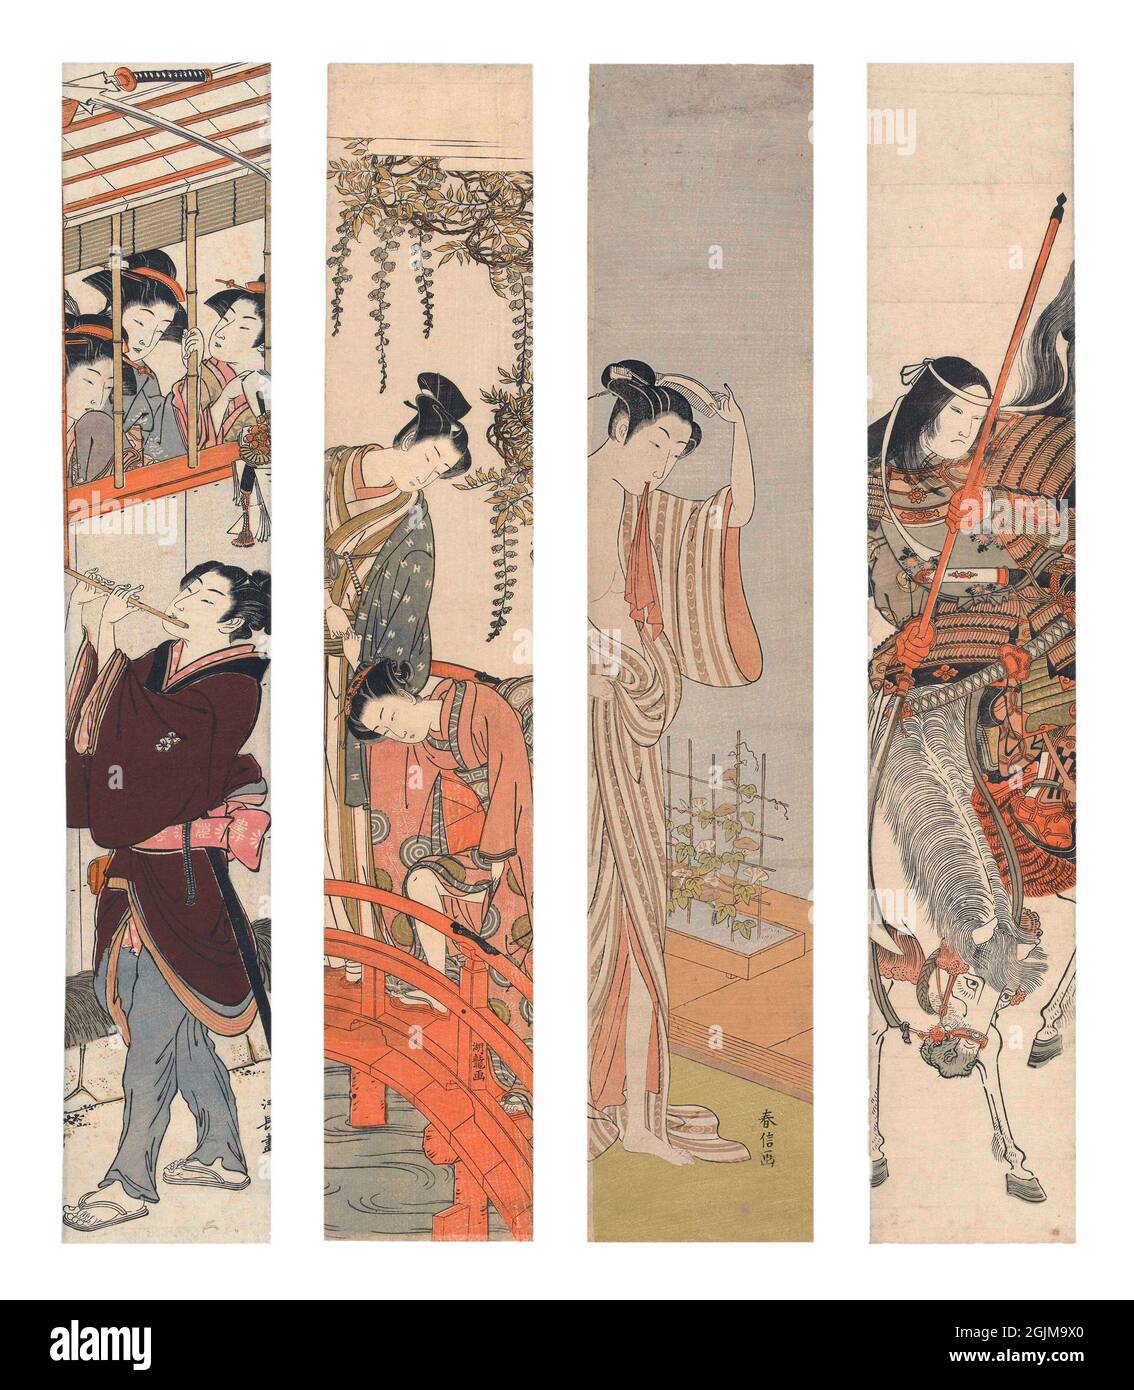 Sélection de 4 boiseries peintes au Japon. De gauche à droite : 1. Courtesan écrit par deux hommes (1765-70) 2.Jeune homme aidant la femme à monter le pont rouge escarpé au temple de Kameido; sous une wisteria en fleurs (1770 - 1780) 3. Femme japonaise, juste à l'extérieur du bain, dans un kimono ouvert. Le pantade en fleurs en arrière-plan (1768/69) 4. La guerrière femelle Tomoe Gozen en armure avec épée sur cheval unique optimisé et amélioré arrangement de quatre dix-huitième et dix-neuvième siècle japonais coupe de bois des illustrations. Banque D'Images